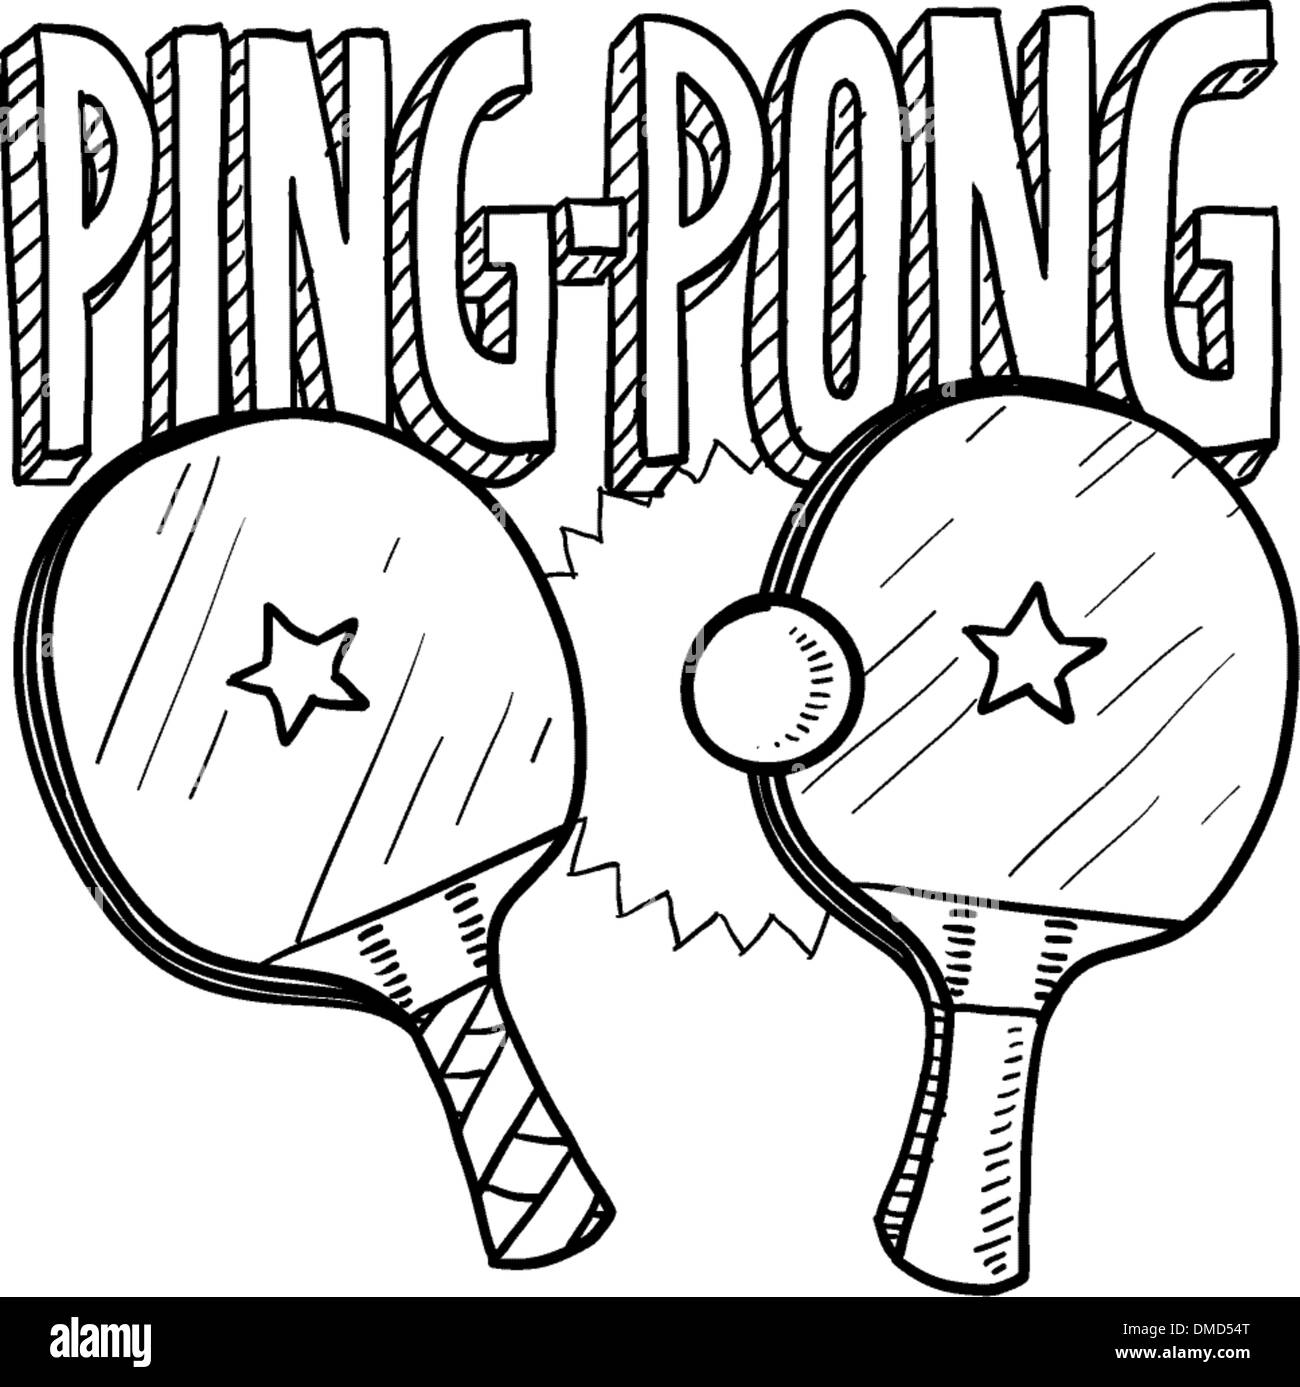 Christentum Schwall Ziege dessin ping pong Sowjet Fähigkeit prüfen